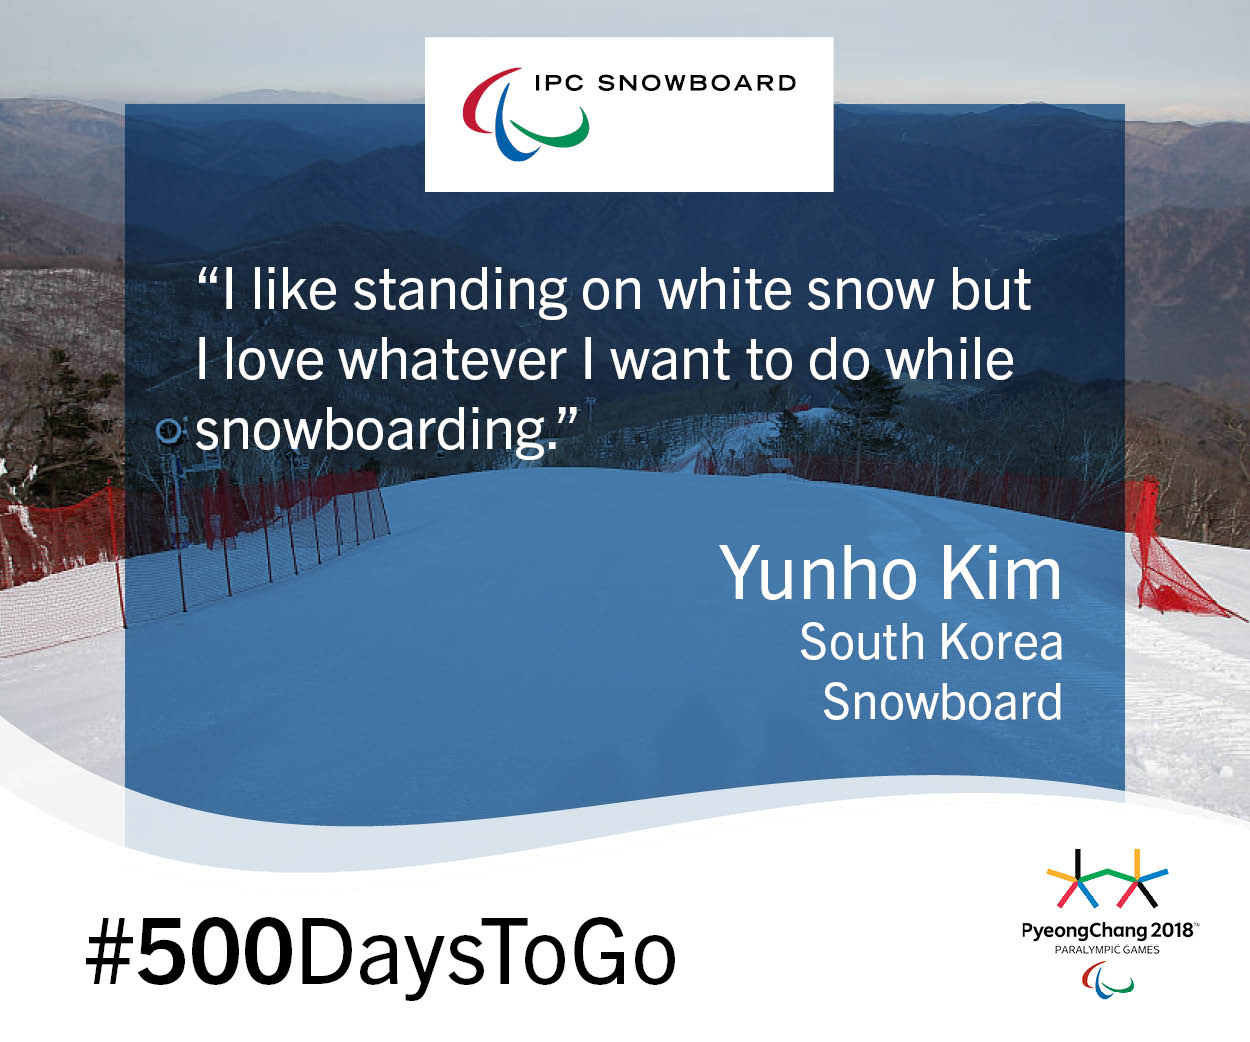 PyeongChang 2018 - #500DaysToGo - Yunho Kim